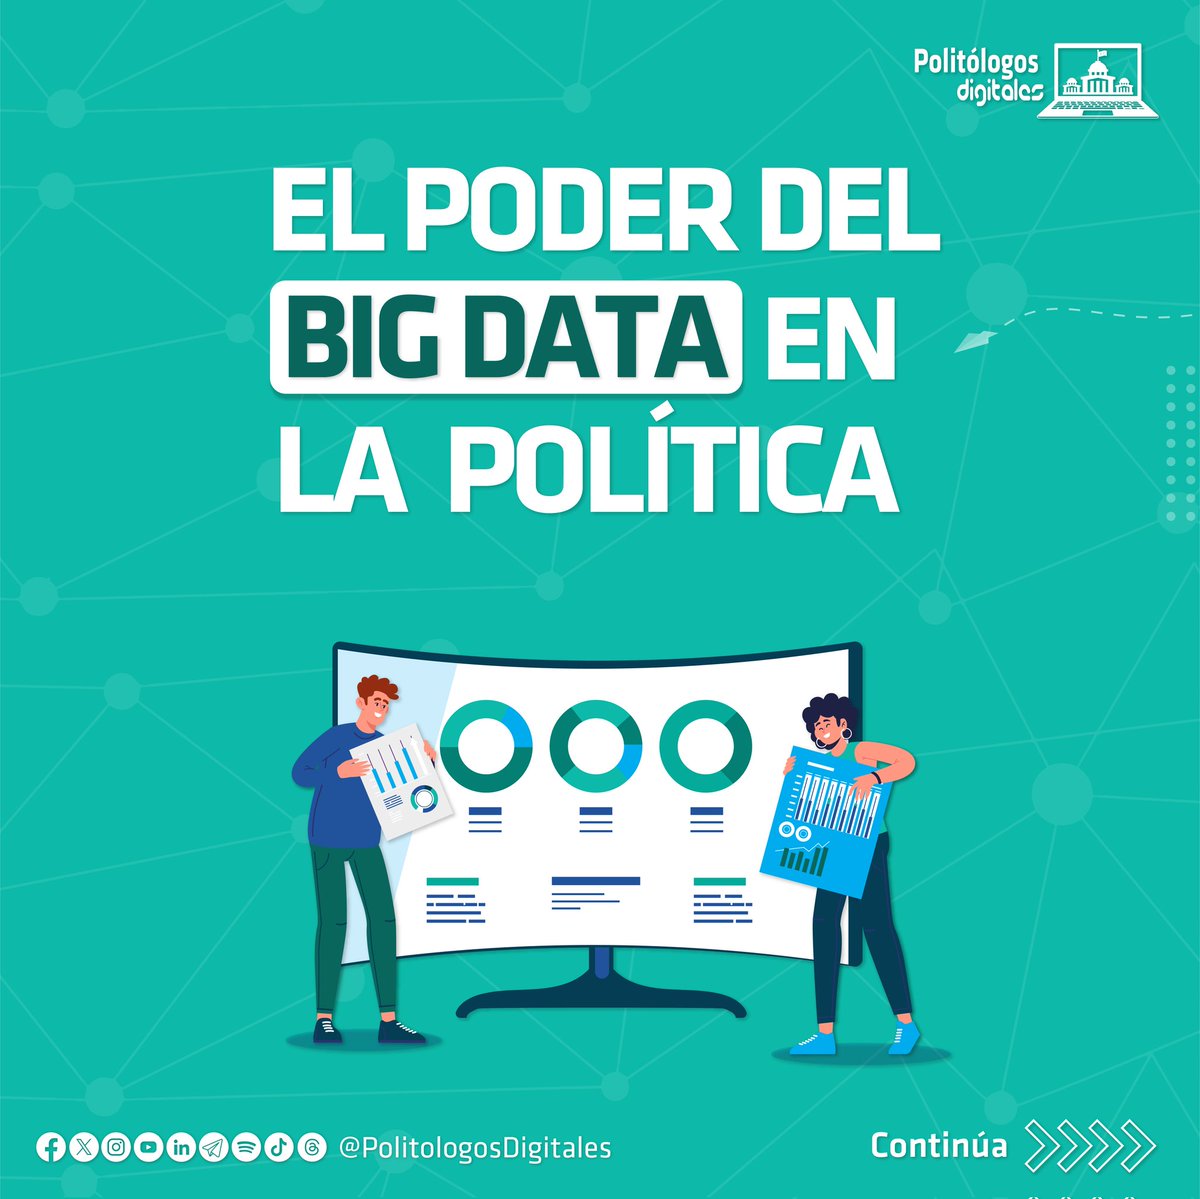 ¿Conocías los beneficios del #BigData en #CampañaPolítica? 🗳️

Descubre como identificar tendencias y preferencias electorales con estos datos. 📊

Coméntanos, ¿conoces alguna campaña o consultor que la haya utilizado? 🤔

#EstrategiaDigital #PolitólogosDigitales #Analytics